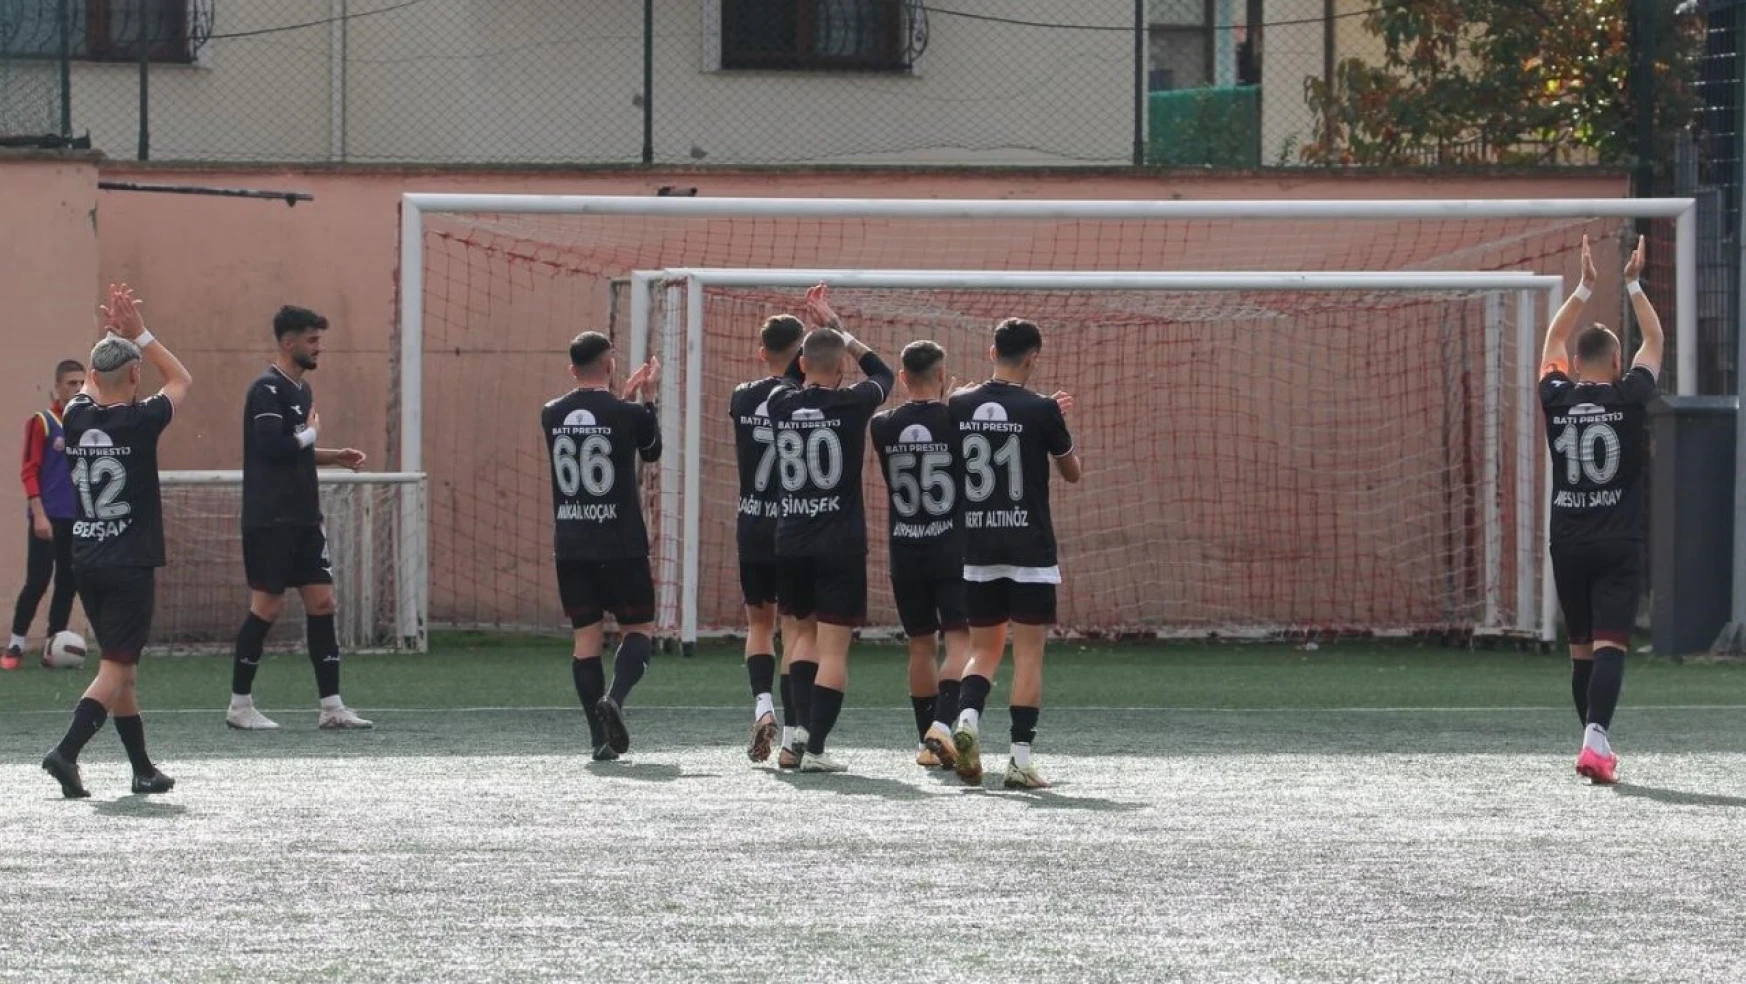 Elazığspor'un serisi 6 maça çıktı